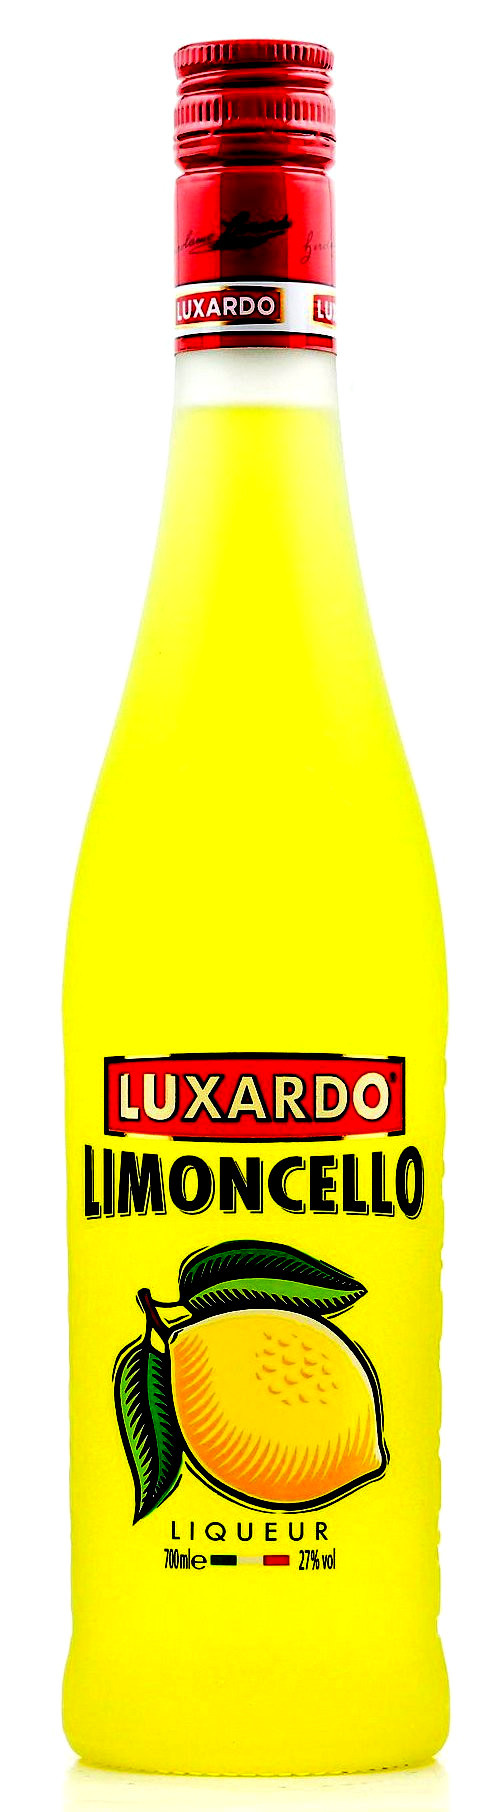 Luxardo Limoncello 0.7l